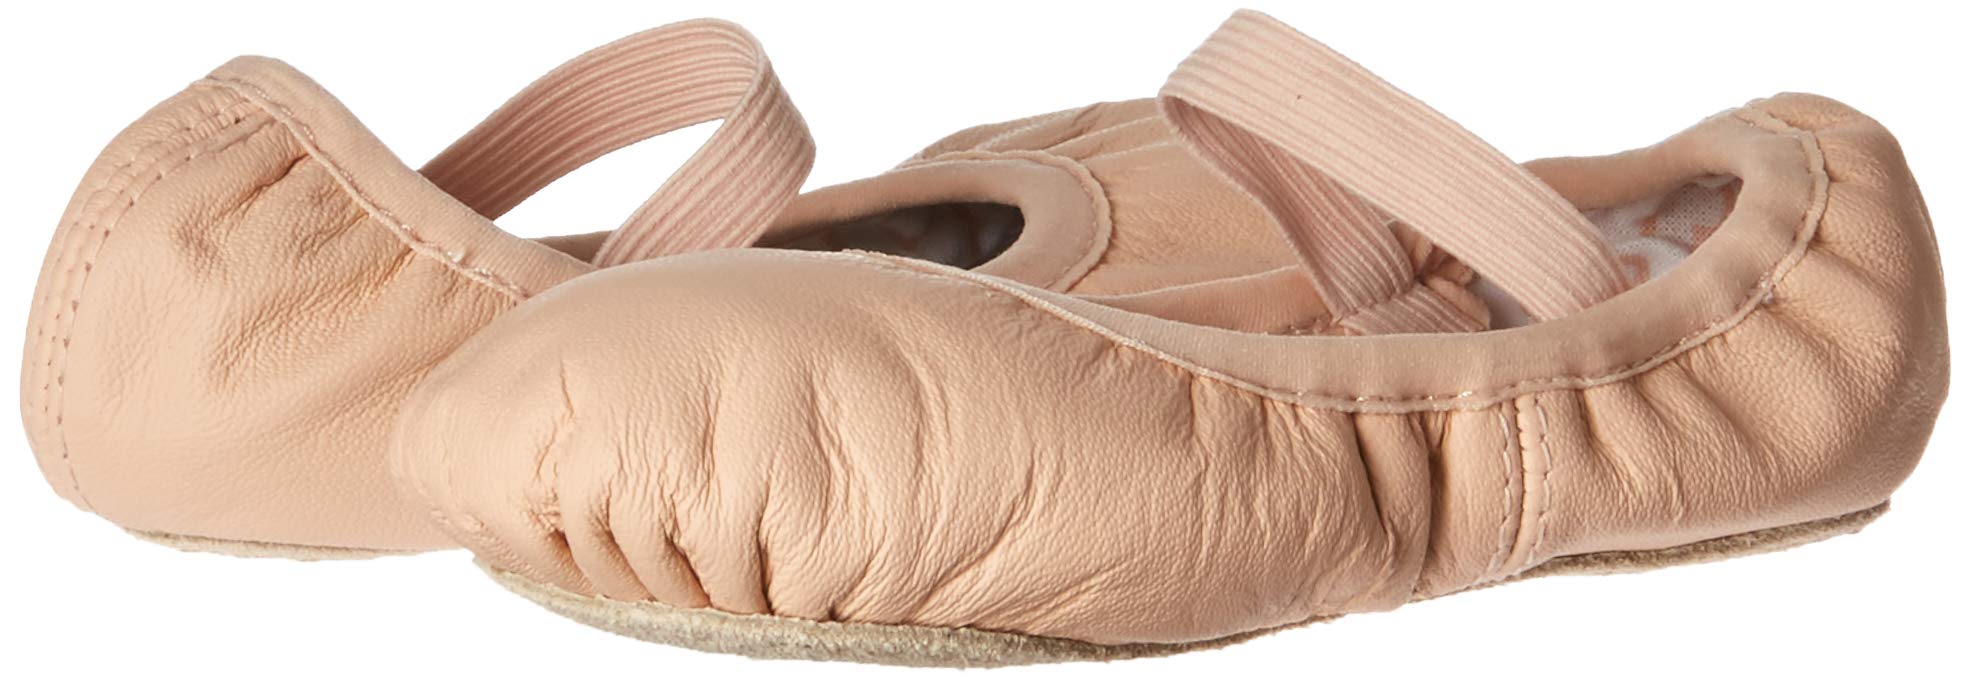 Bloch girls Bloch Girls' Belle Full-sole Leather Ballet Shoe/Slipper Dance Shoe, Pink, 1.5 Little Kid US